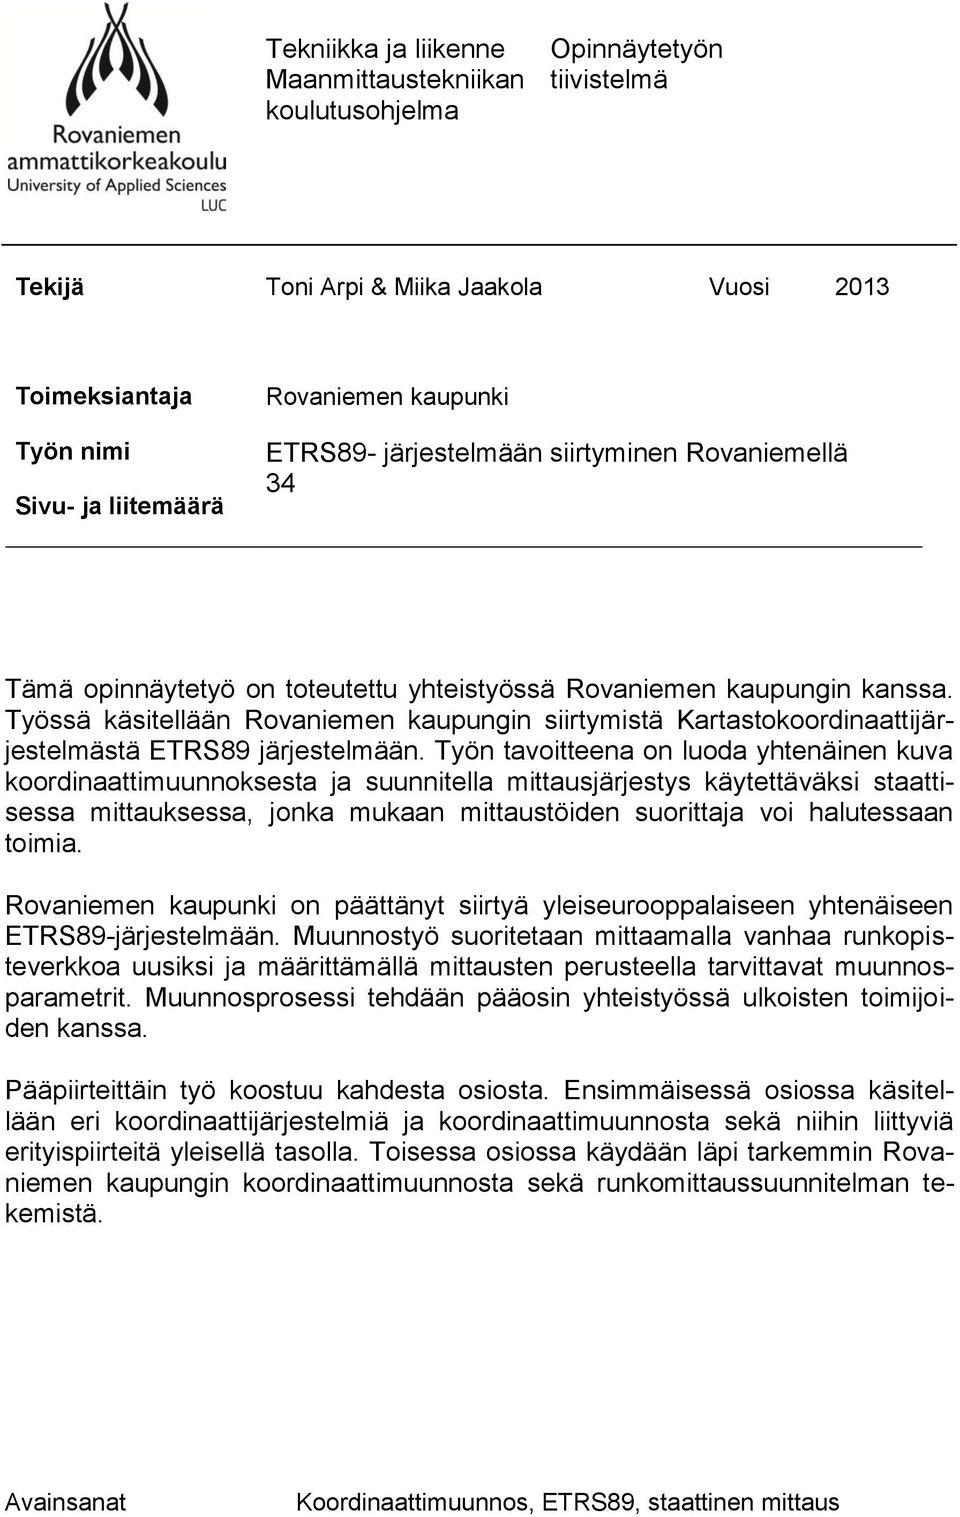 Työssä käsitellään Rovaniemen kaupungin siirtymistä Kartastokoordinaattijärjestelmästä ETRS89 järjestelmään.